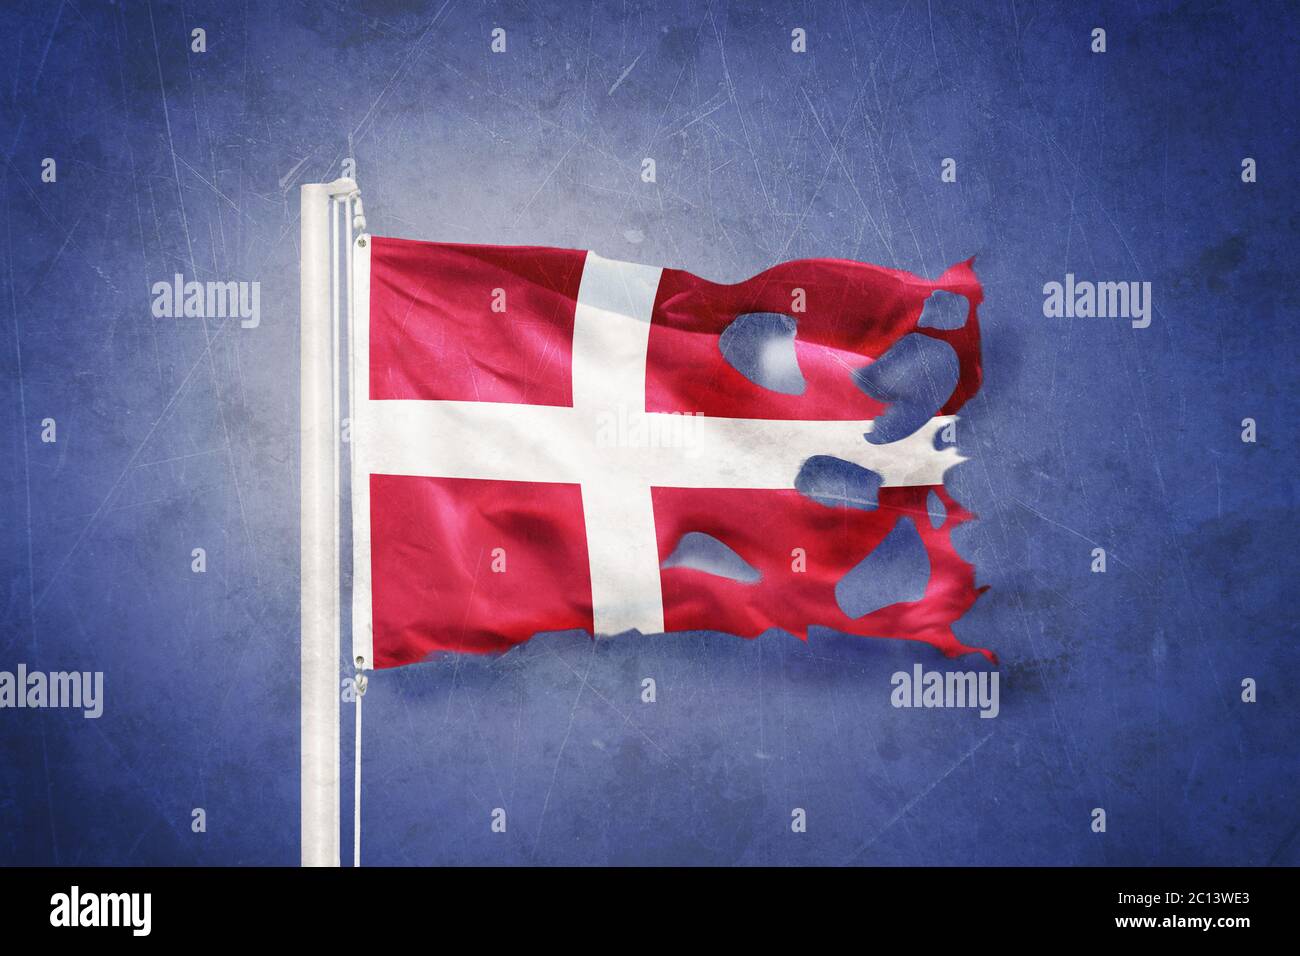 Torn flag of Denmark flying against grunge background Stock Photo